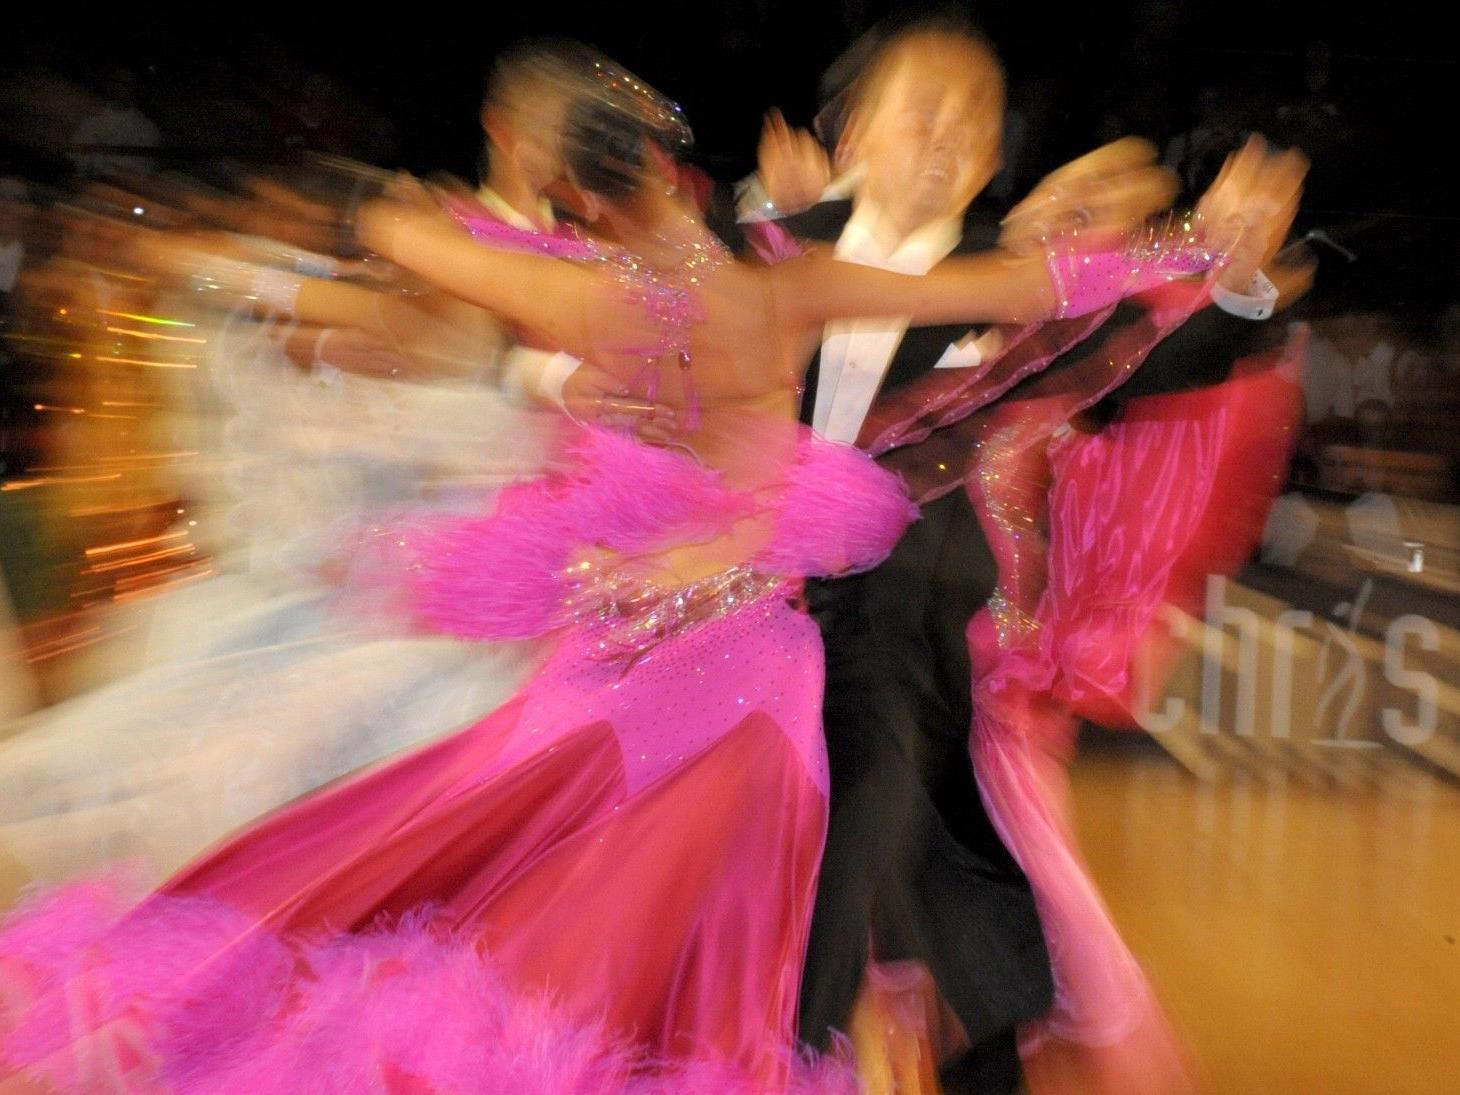 Der "Treffpunkt Tanz" lädt bis 29. September zu gratis Tanzstunden ein.